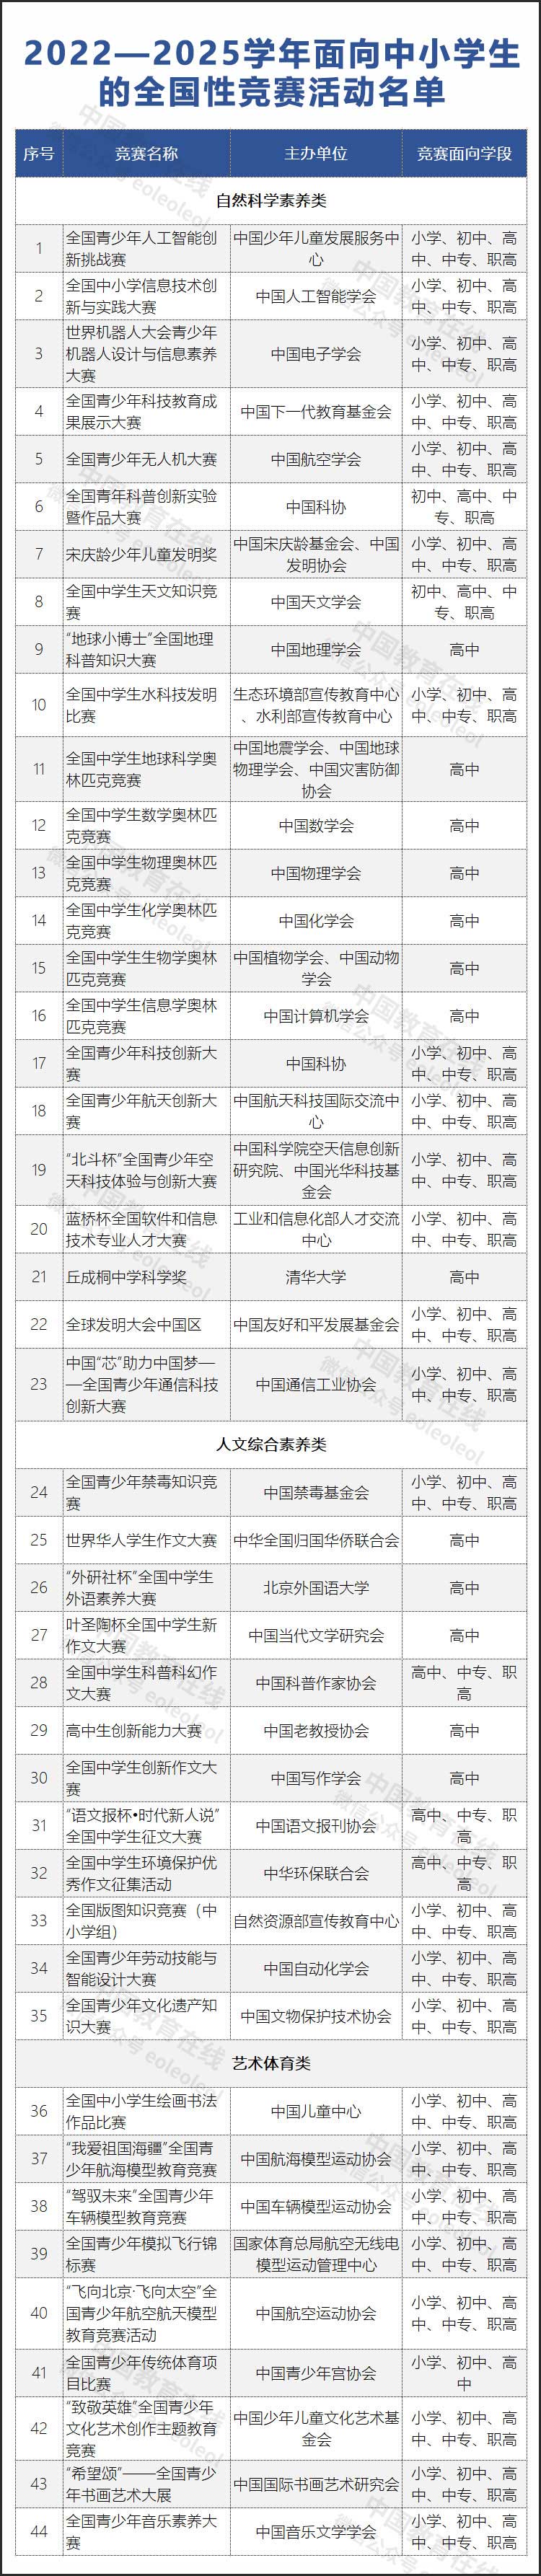 教育部：“叶圣陶杯”华人青少年作文大赛等均为违规竞赛